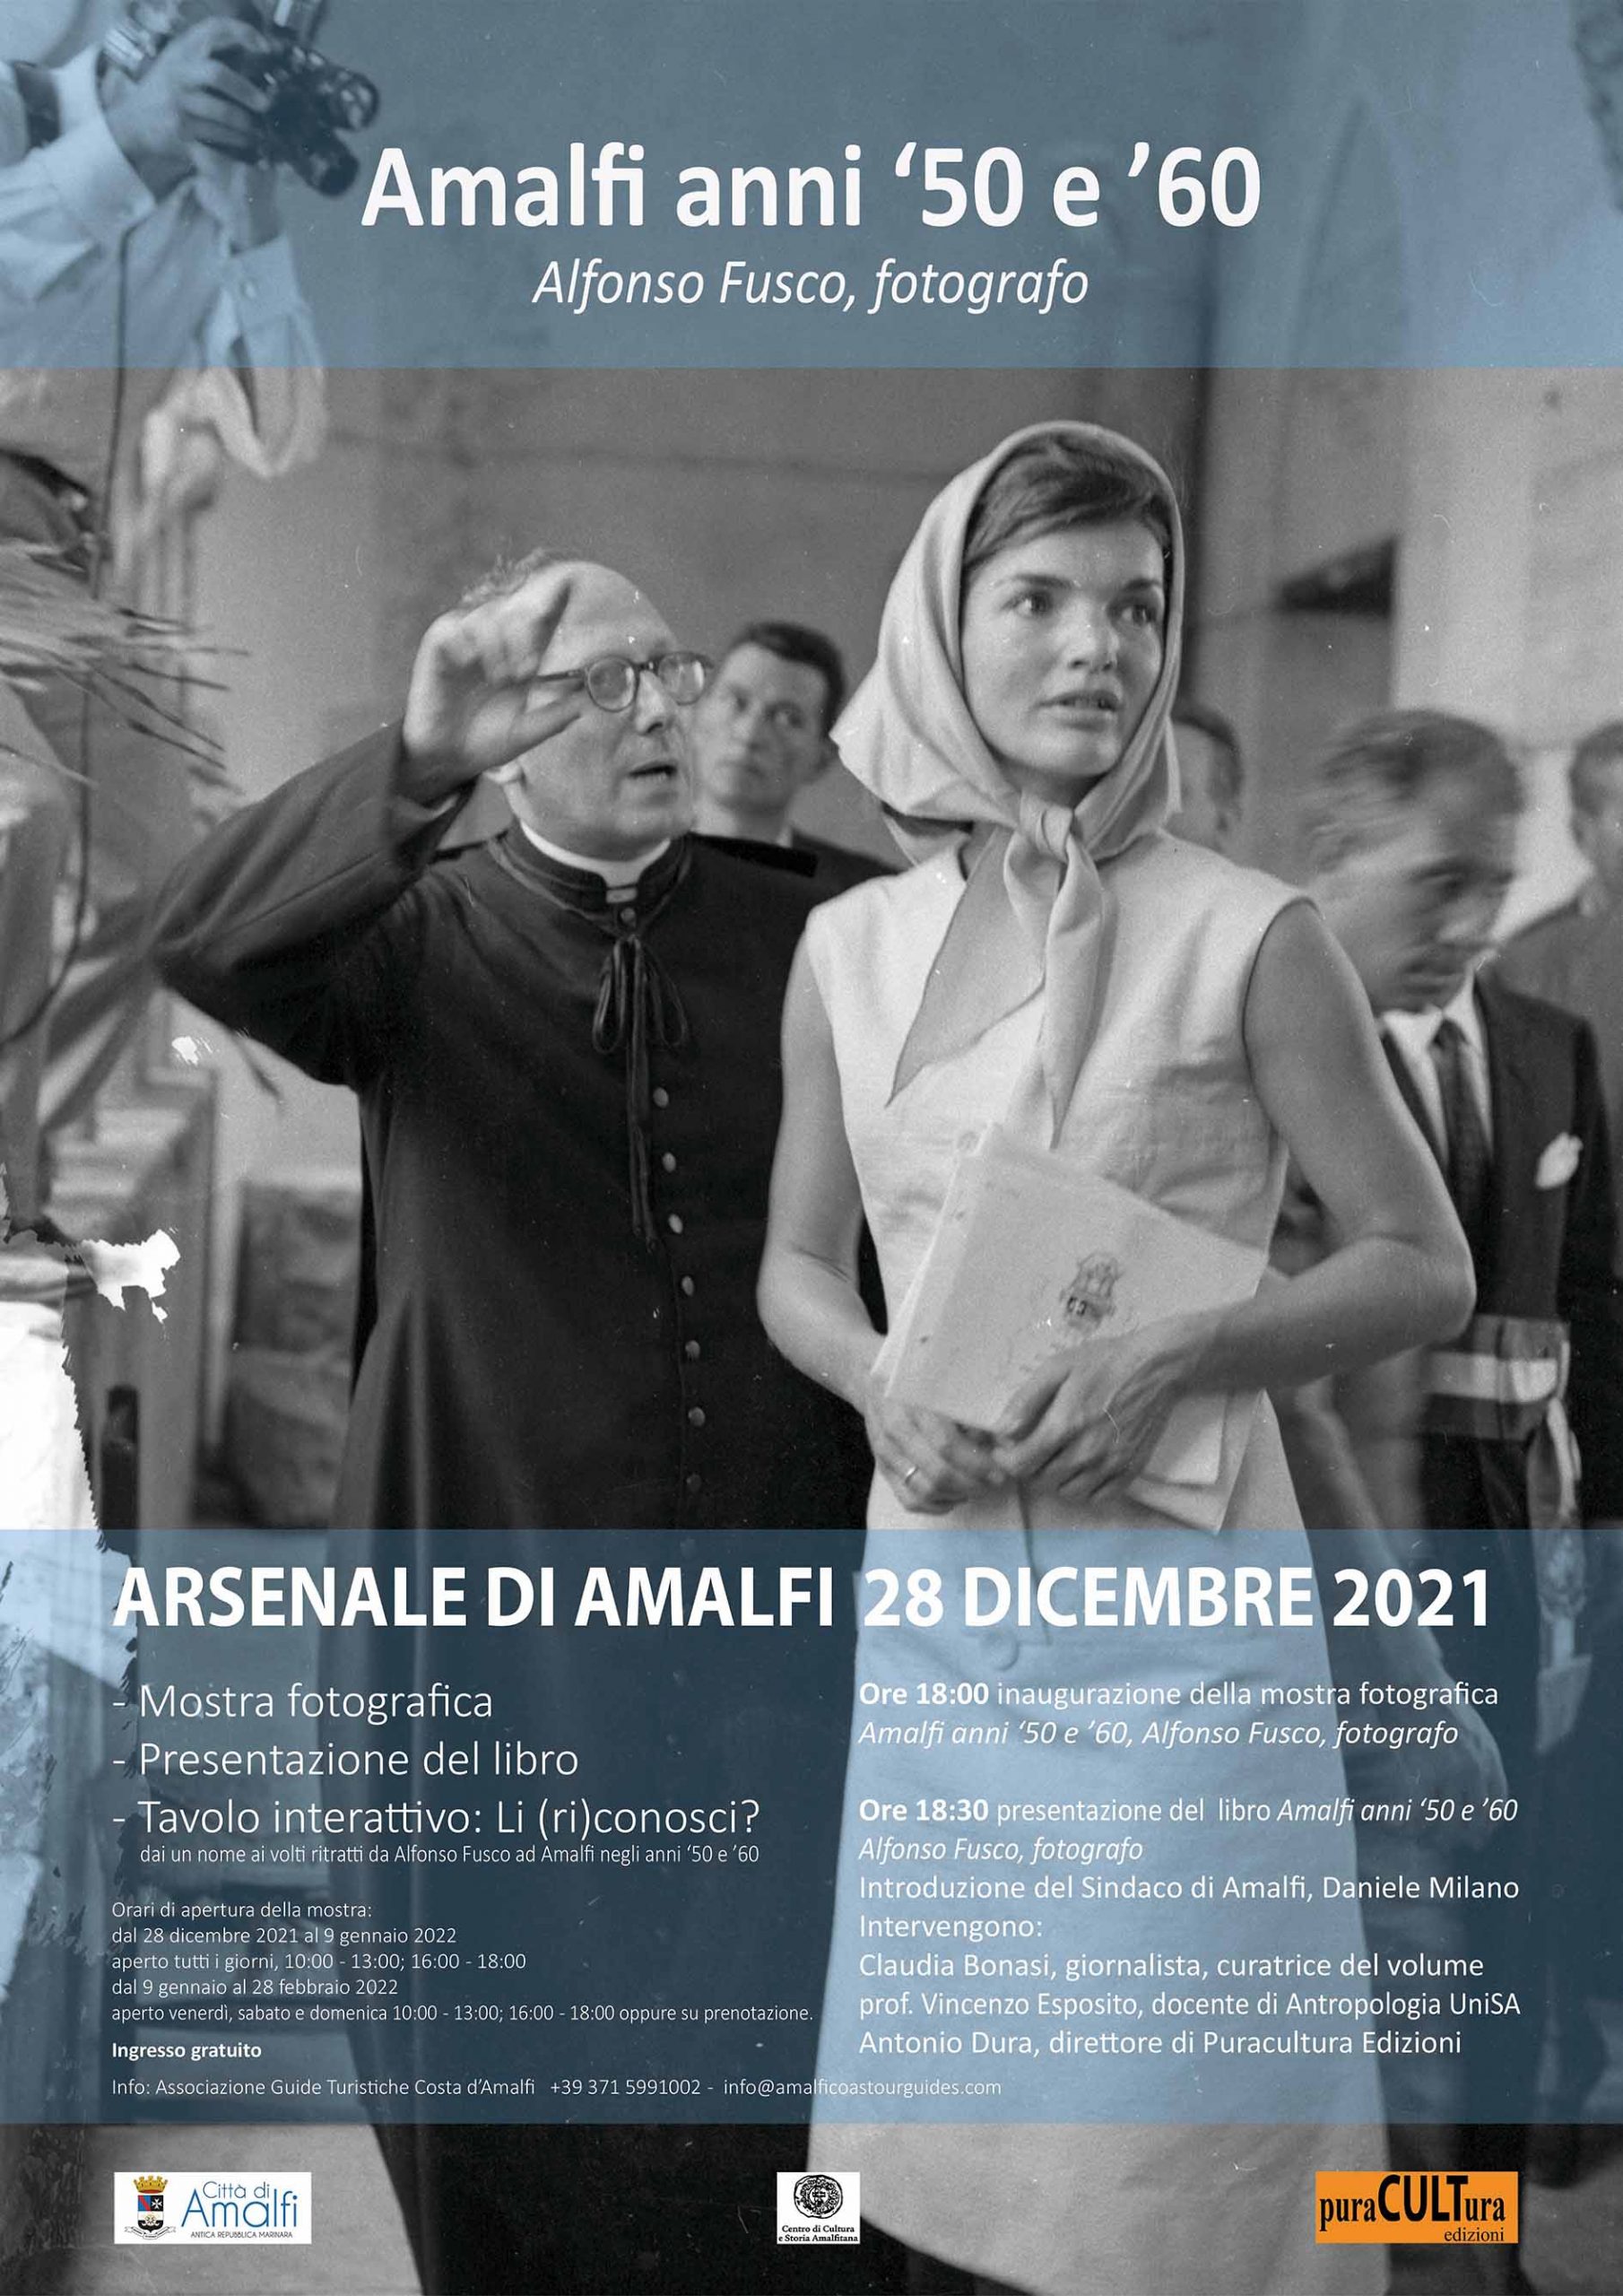 Amalfi: all’Arsenale mostra fotografica “Amalfi anni ’50 e ’60 – Alfonso Fusco, fotografo”